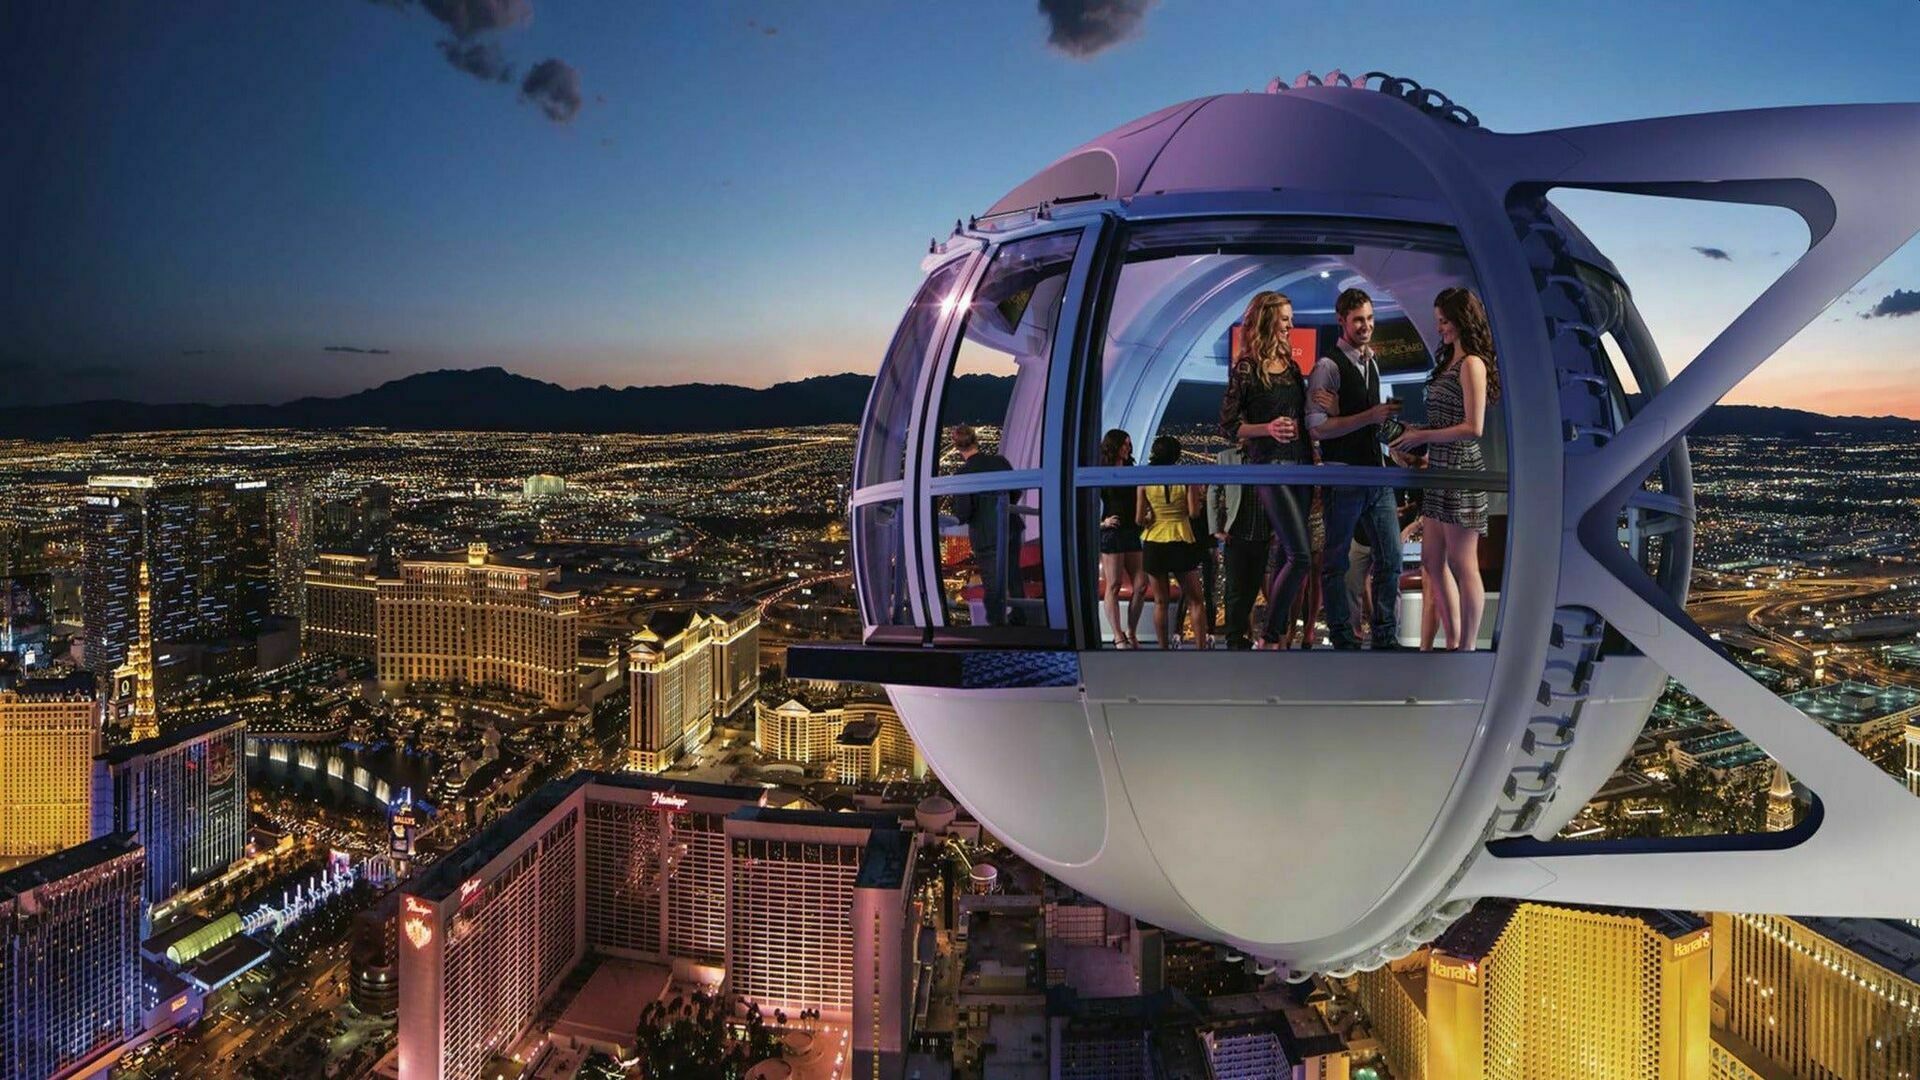 В Лас-Вегасе застряли в воздухе пассажиры самого высокого в мире колеса обозрения